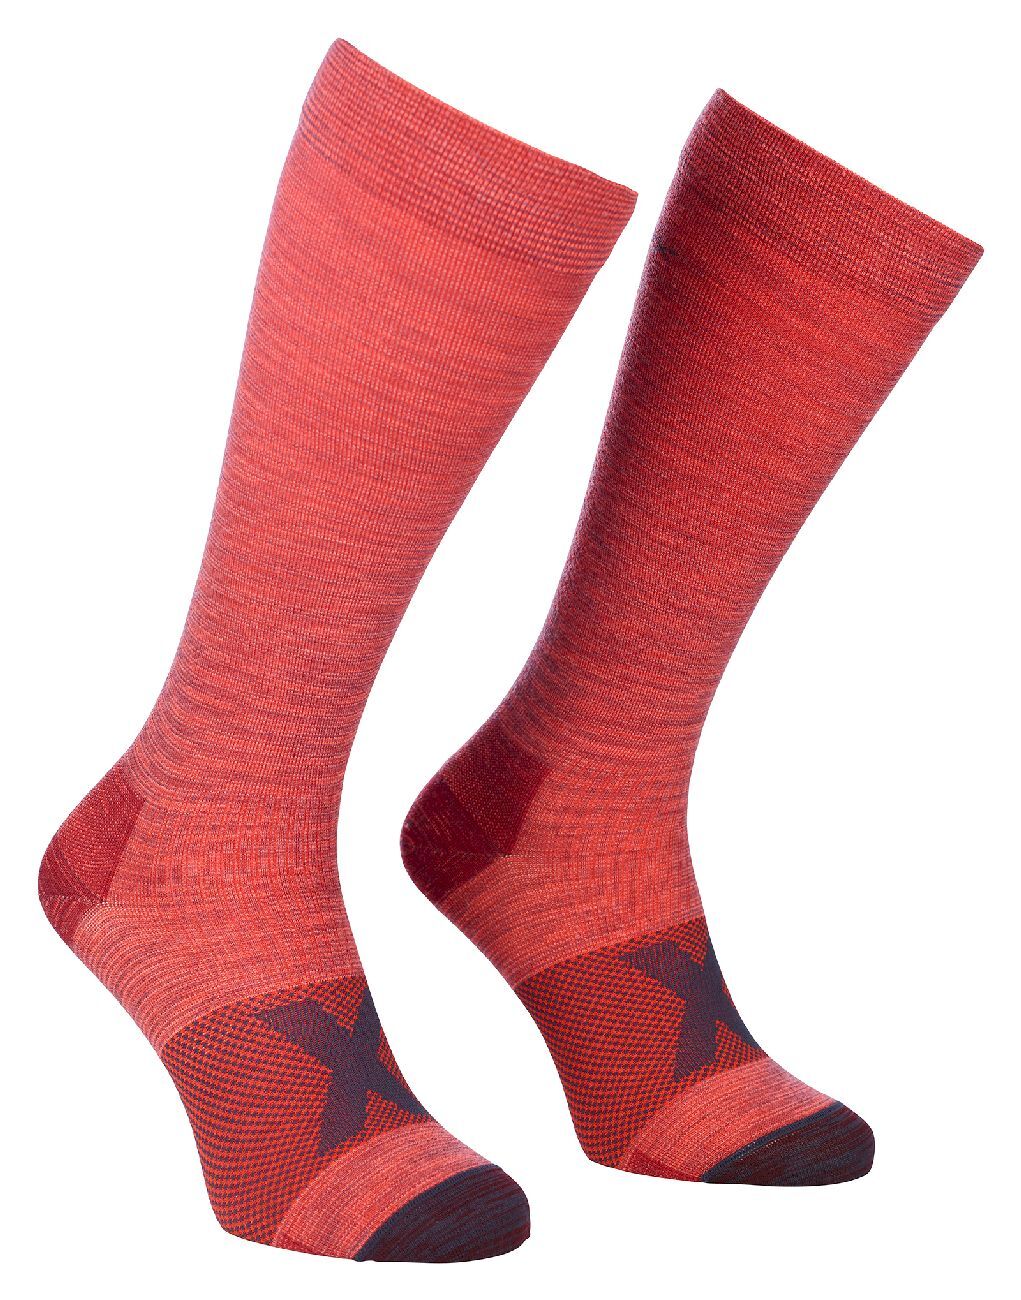 Ortovox Tour Compression Long Socks - Skisokken - Dames